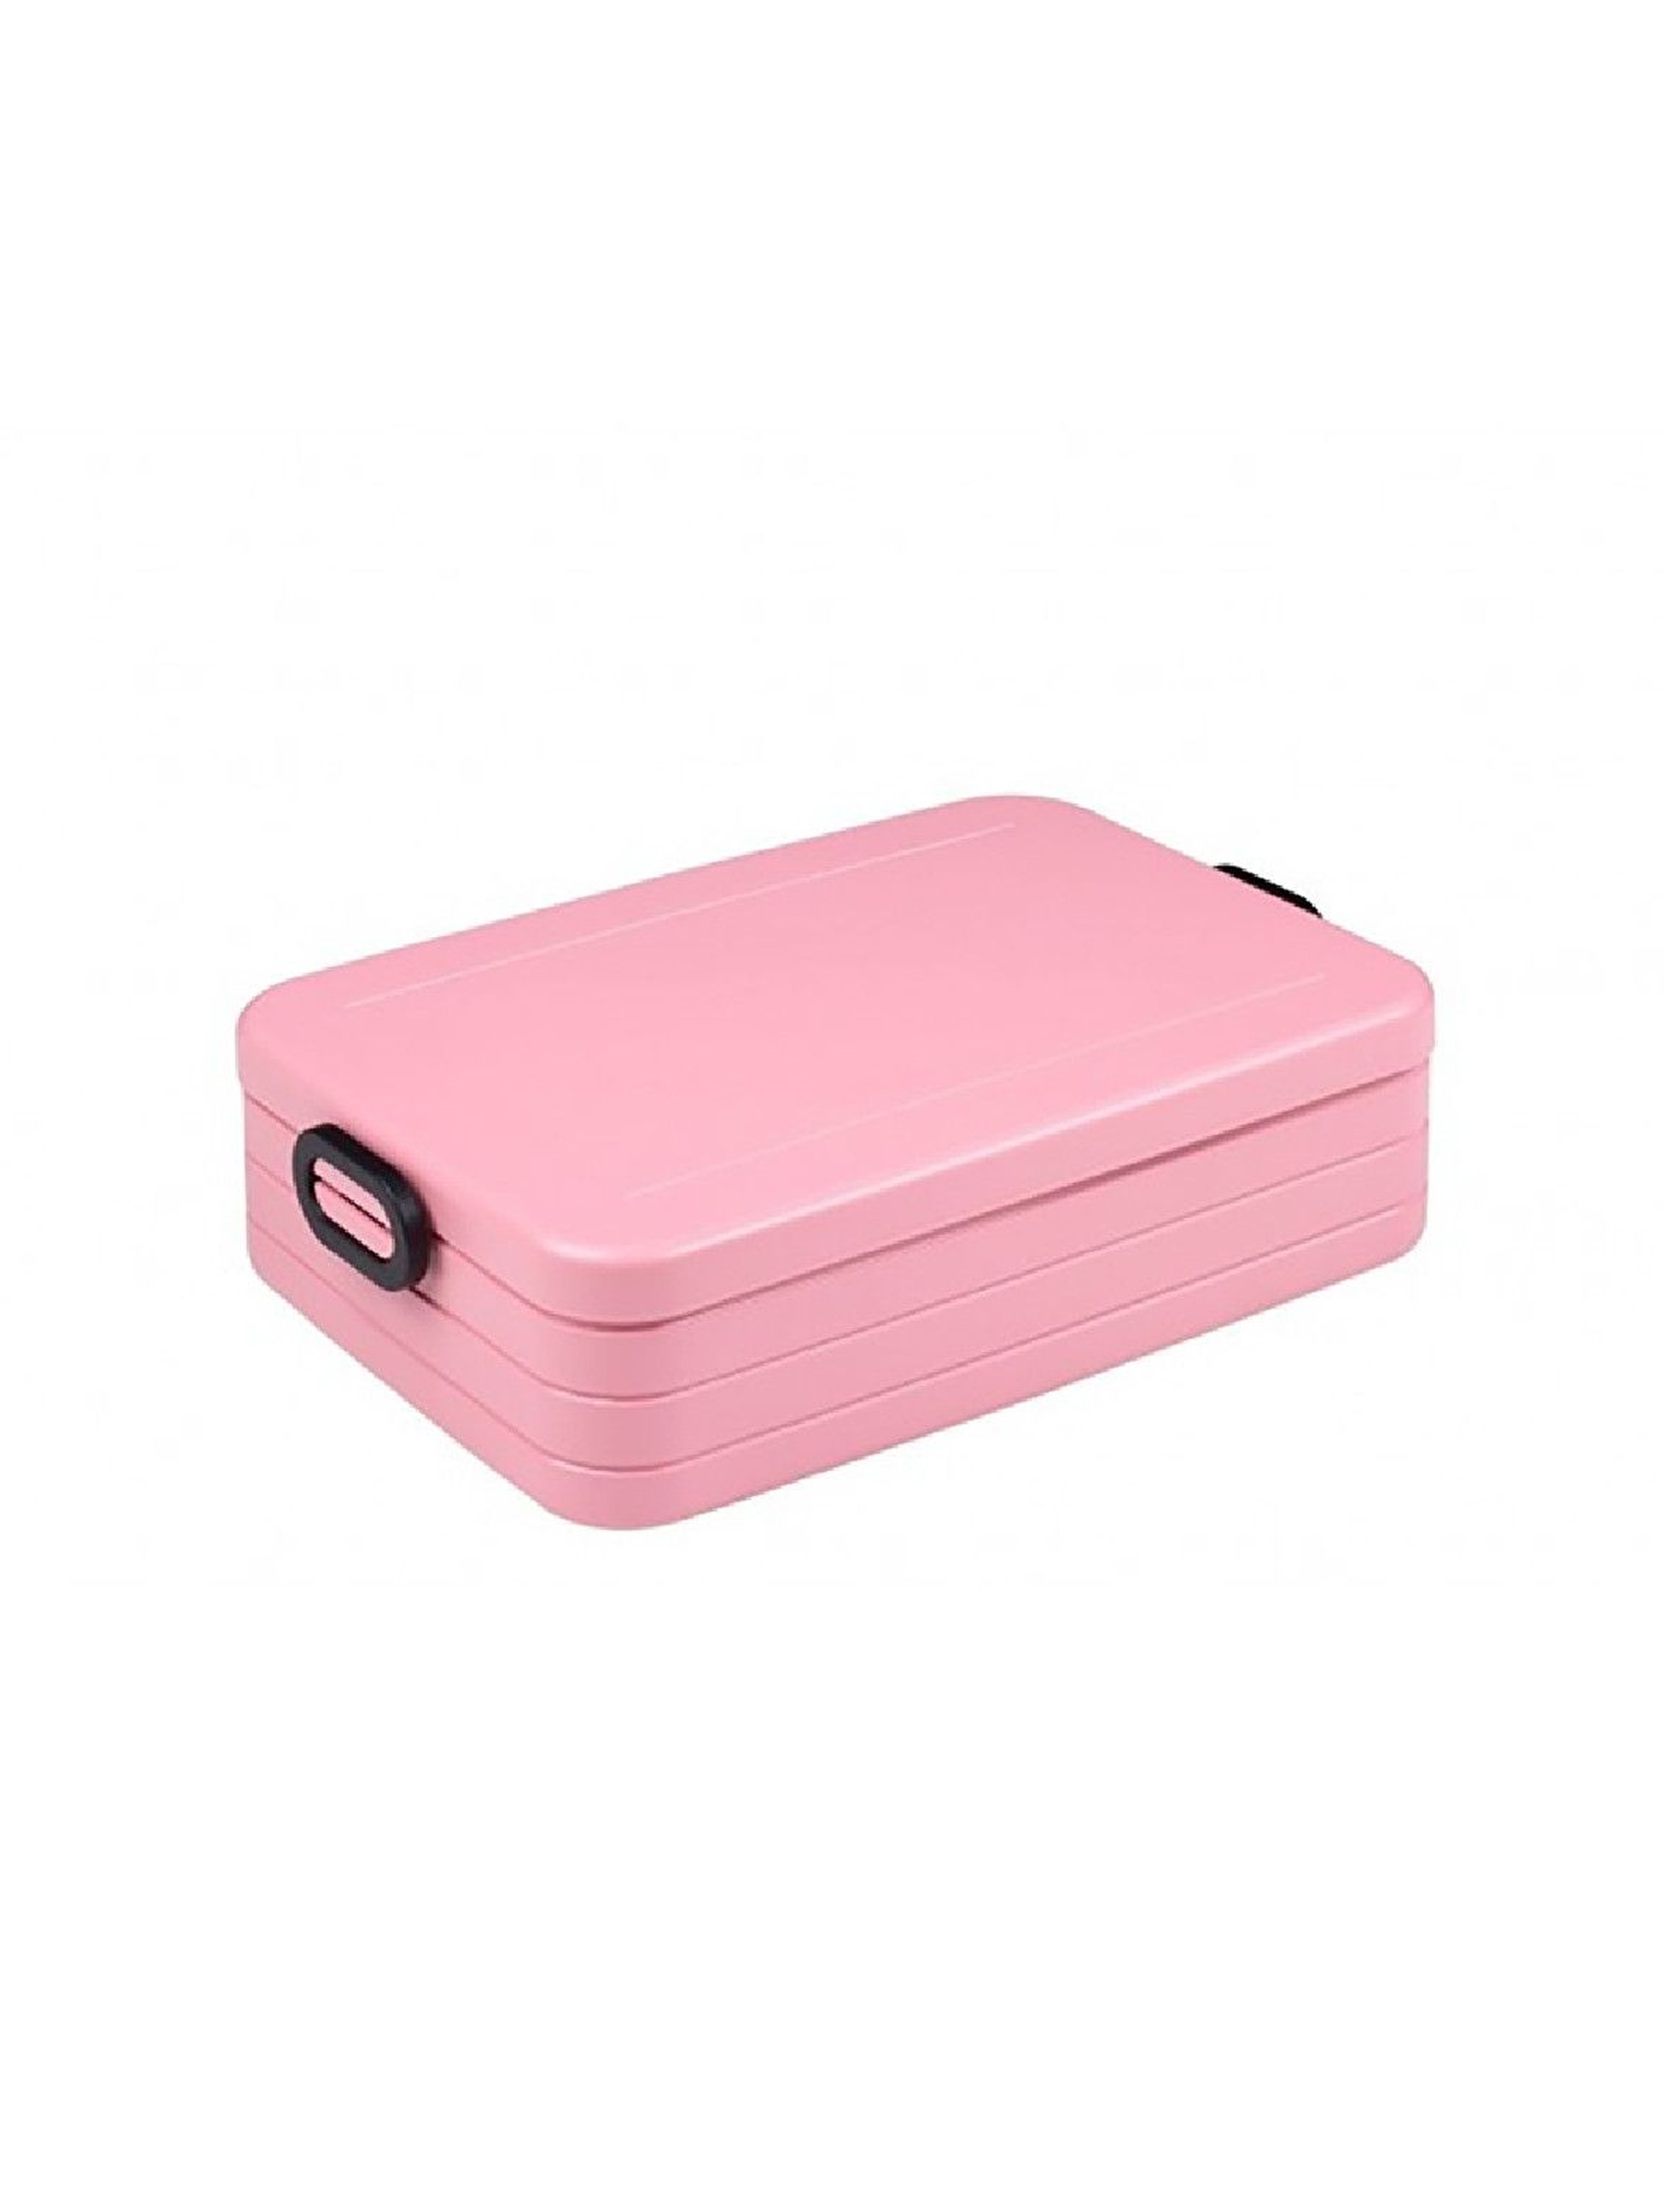 Lunchbox TAKE A BREAK BENTO duży- nordic pink